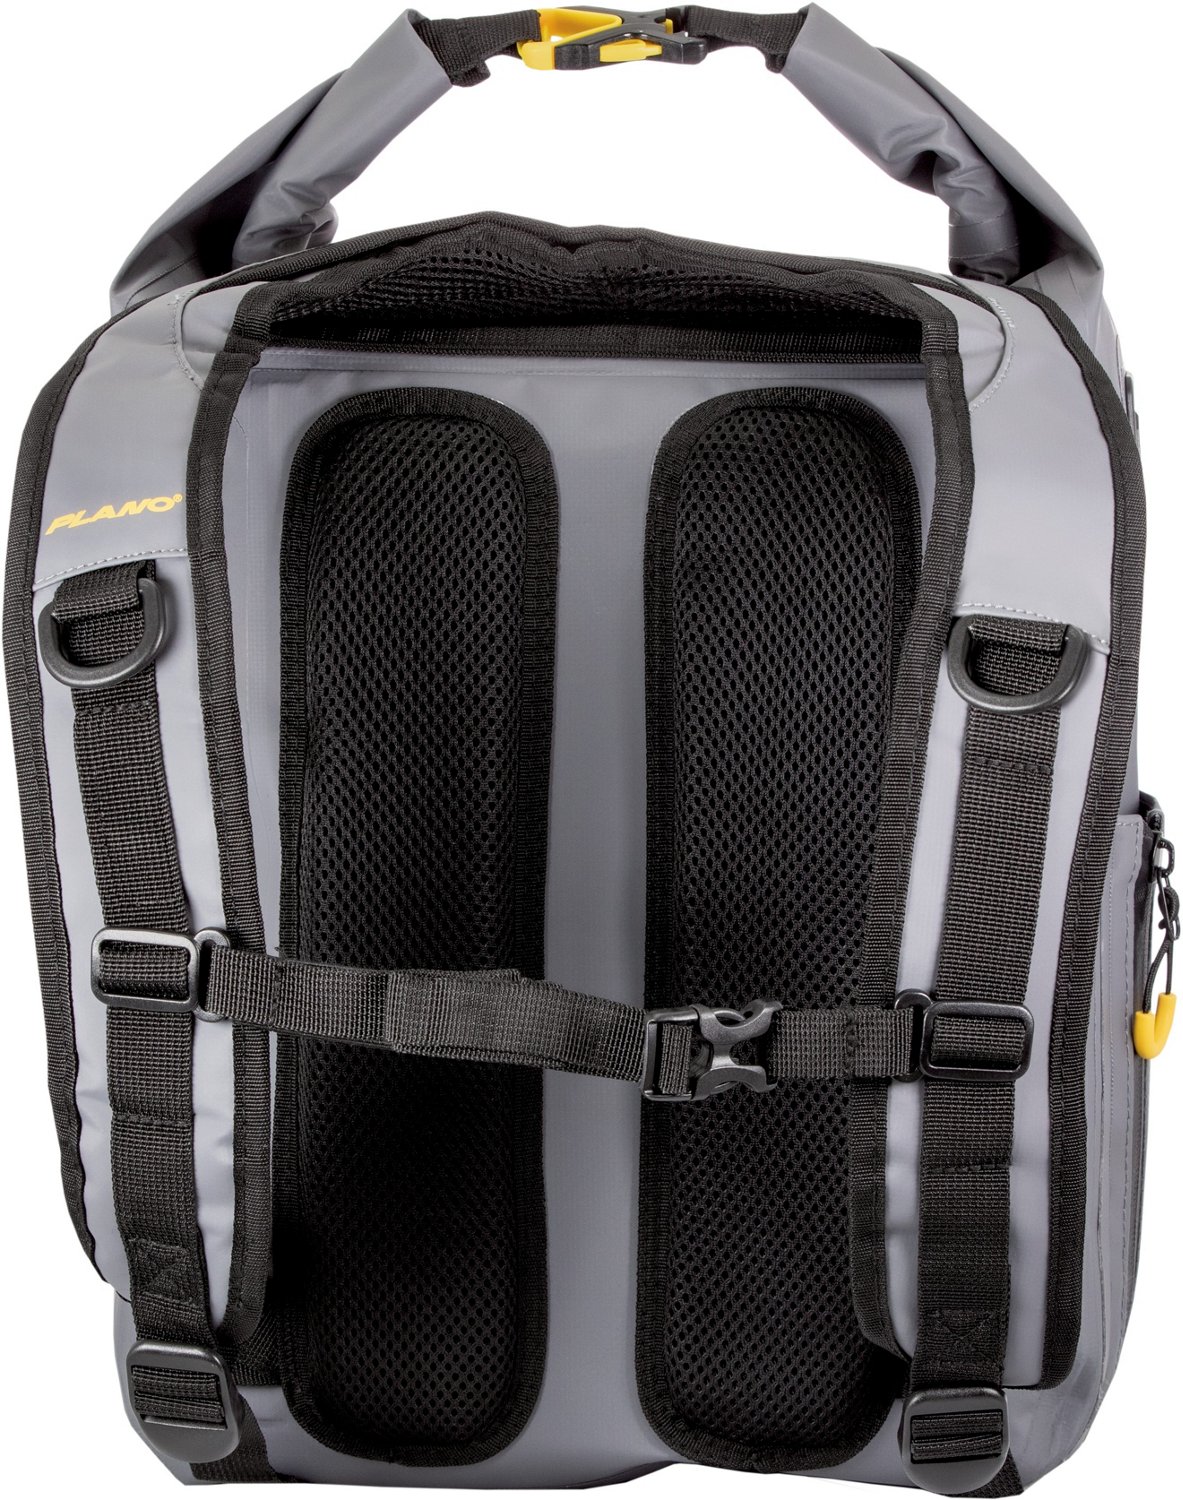 Plano Z-Series Waterproof Tackle Backpack